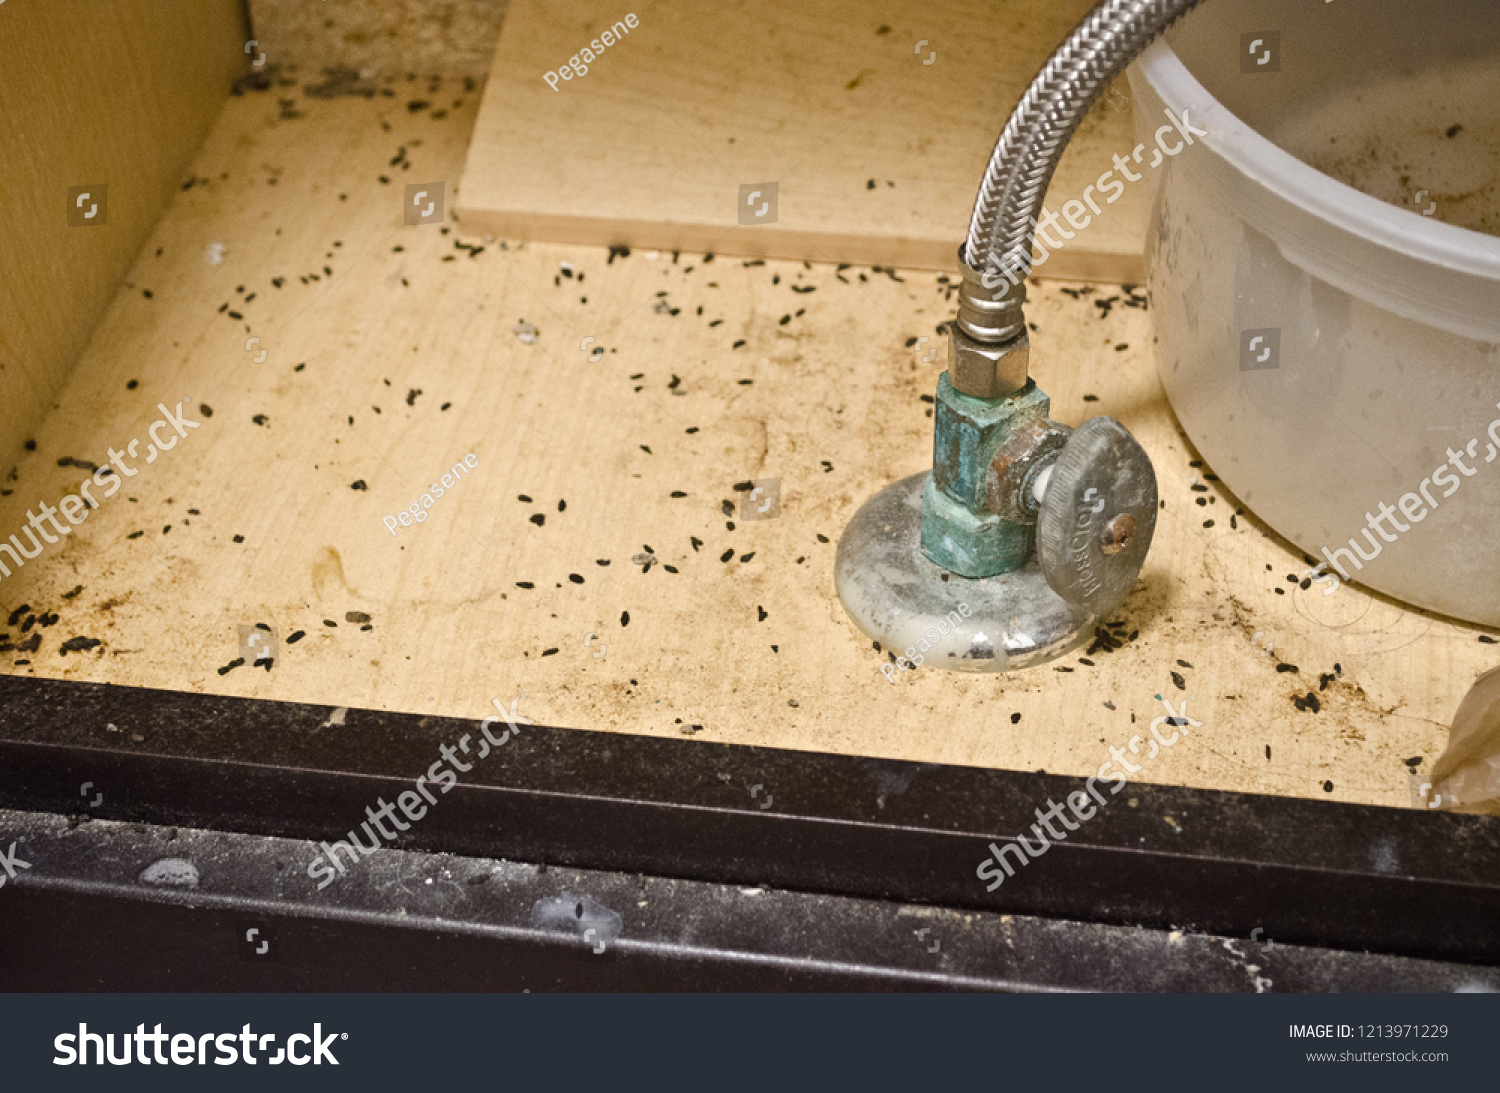 mouse poop under bathroom sink